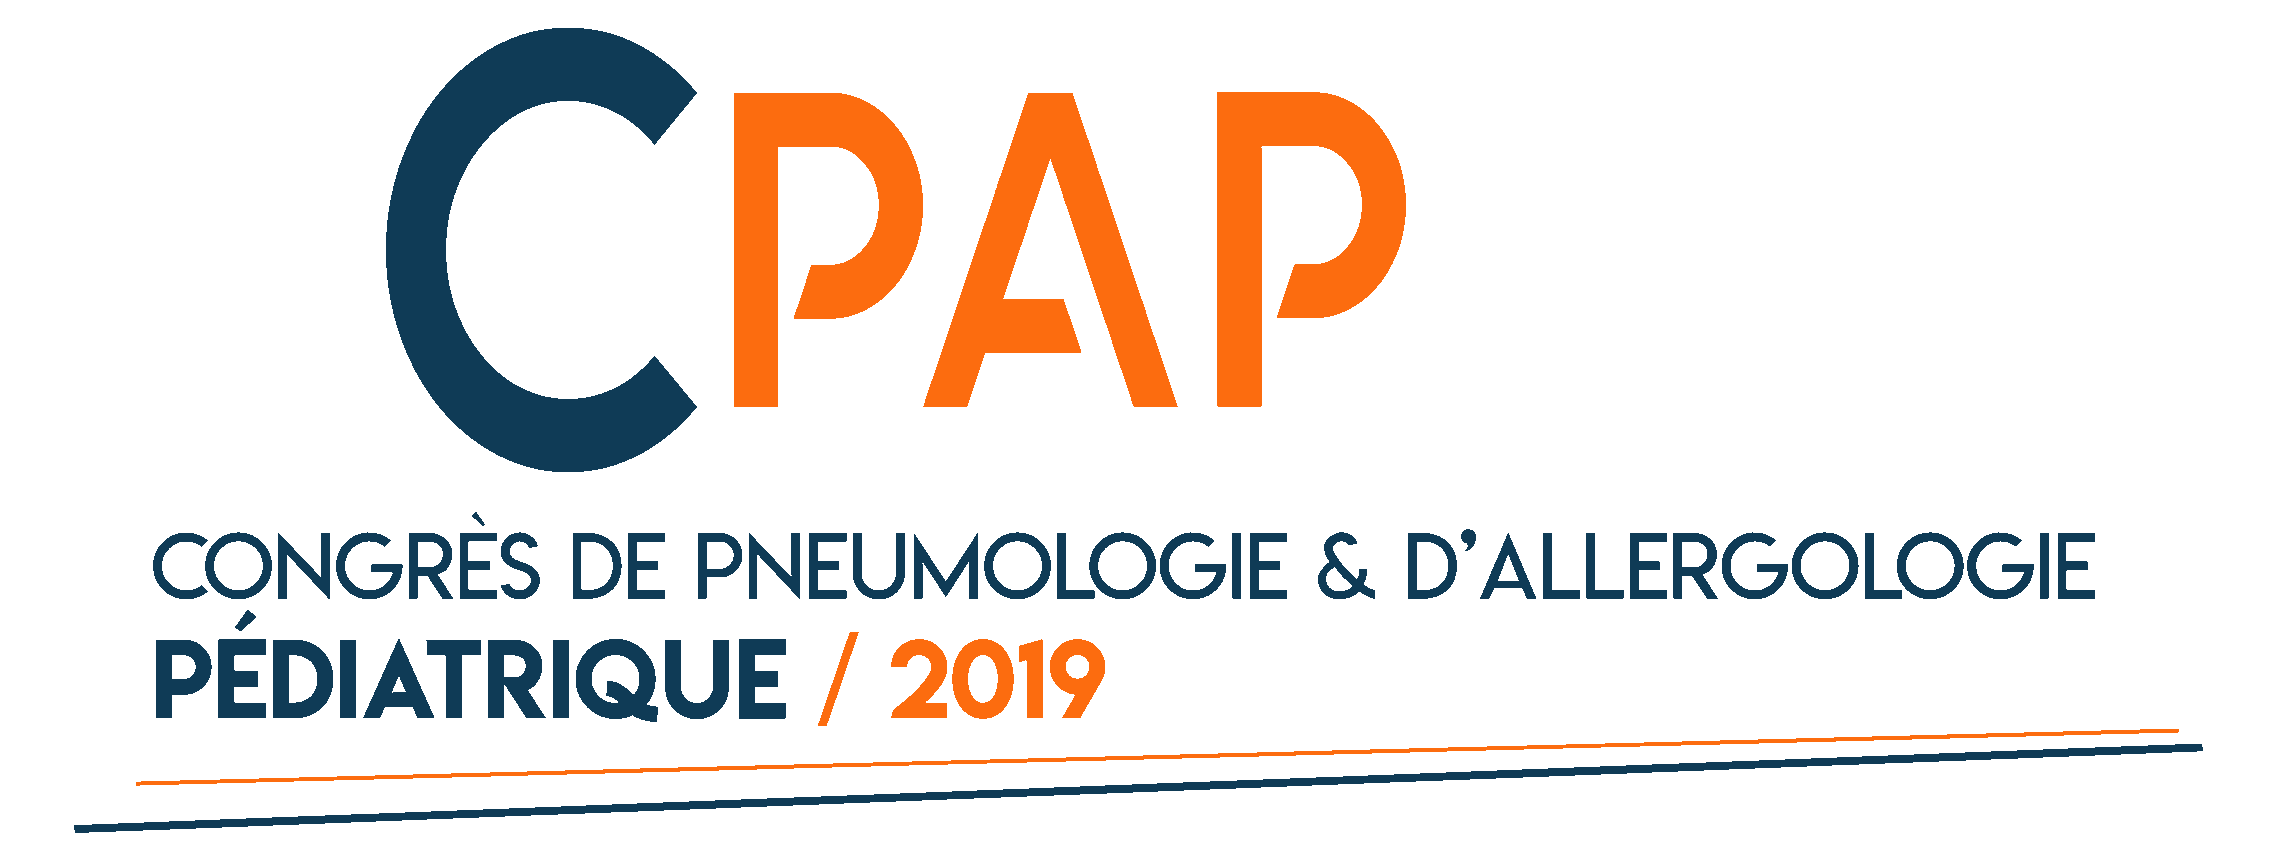 Congrès de Pneumologie et d’Allergologie Pédiatrique (CPAP) 2019